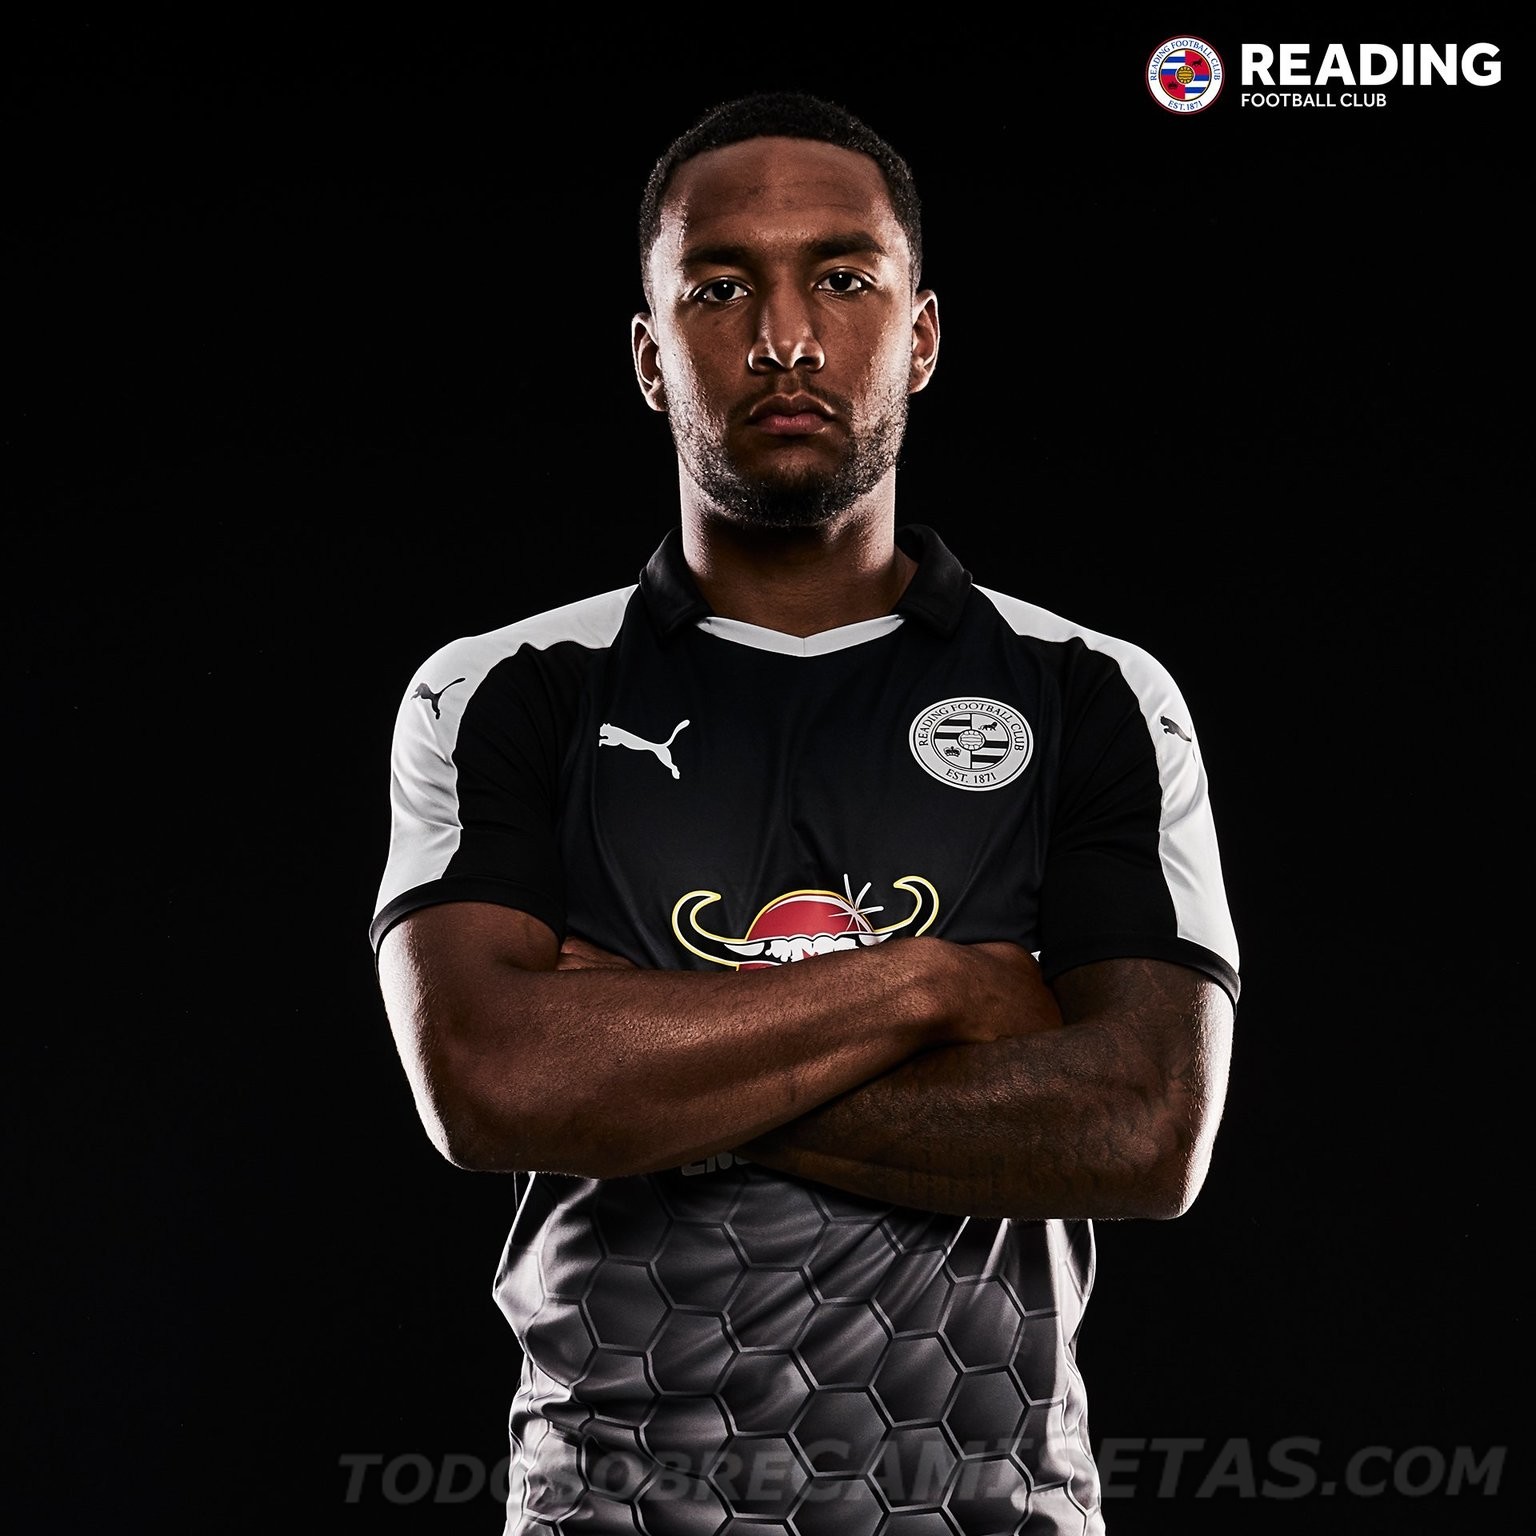 Reading FC Puma Kits 2018-19